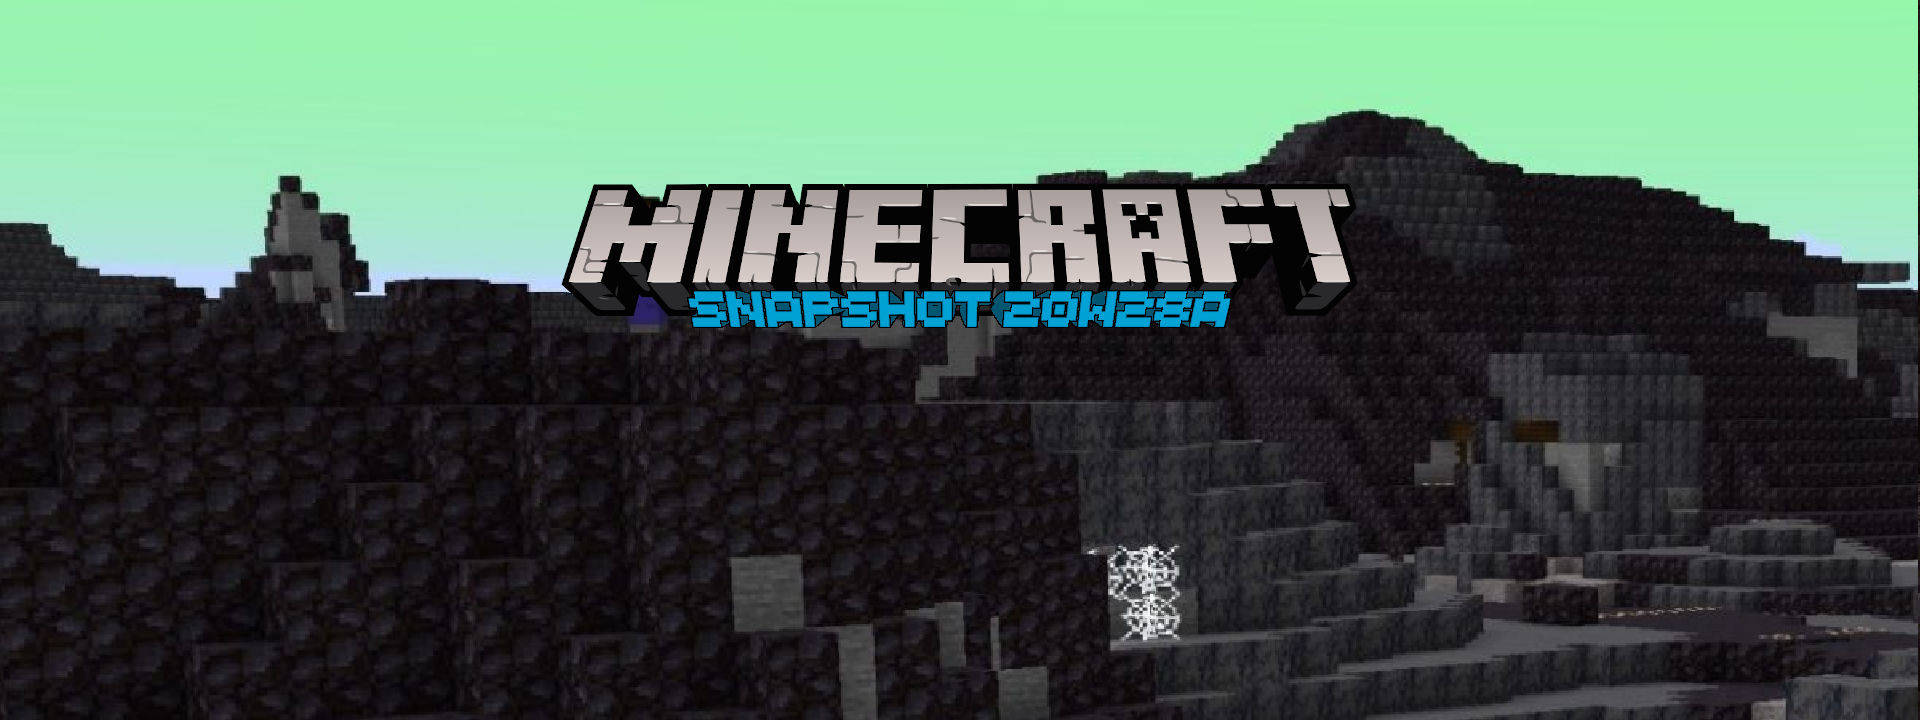 Minecraft Snapshot 20w28a